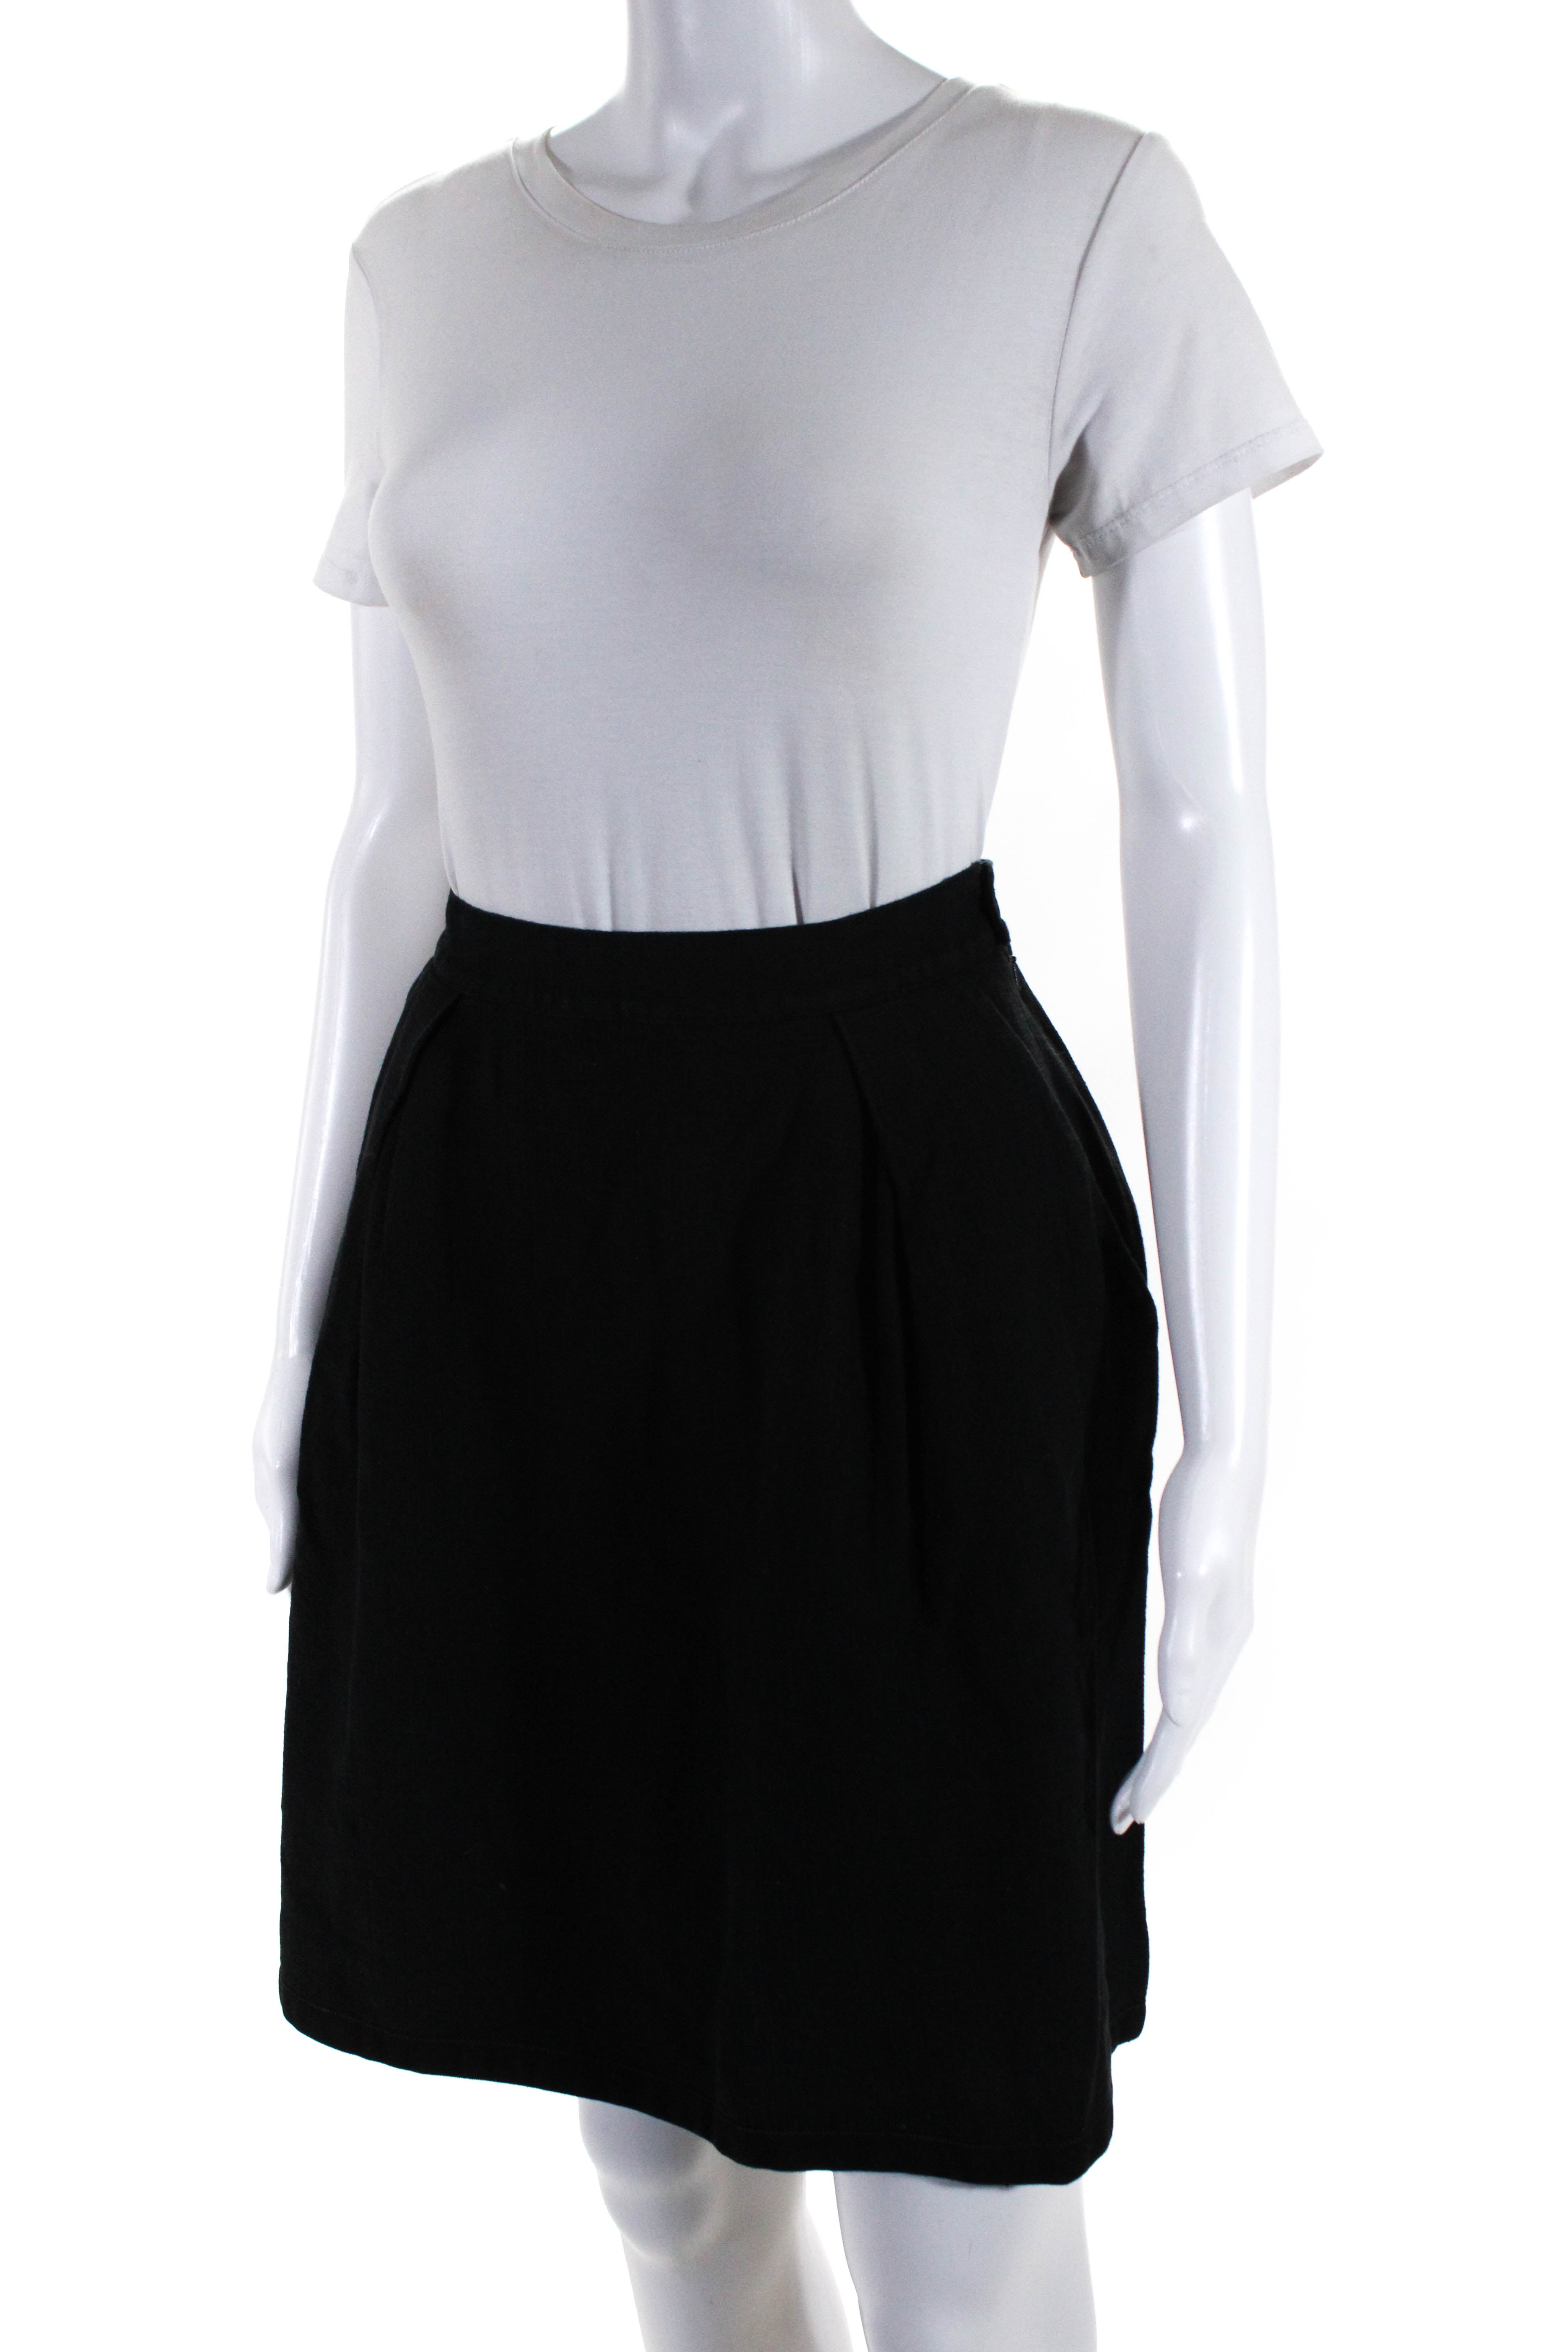 La Perla Womens Pleated Front Skirt Black Cotton Blend Size EUR 44 - Shop  Linda's Stuff